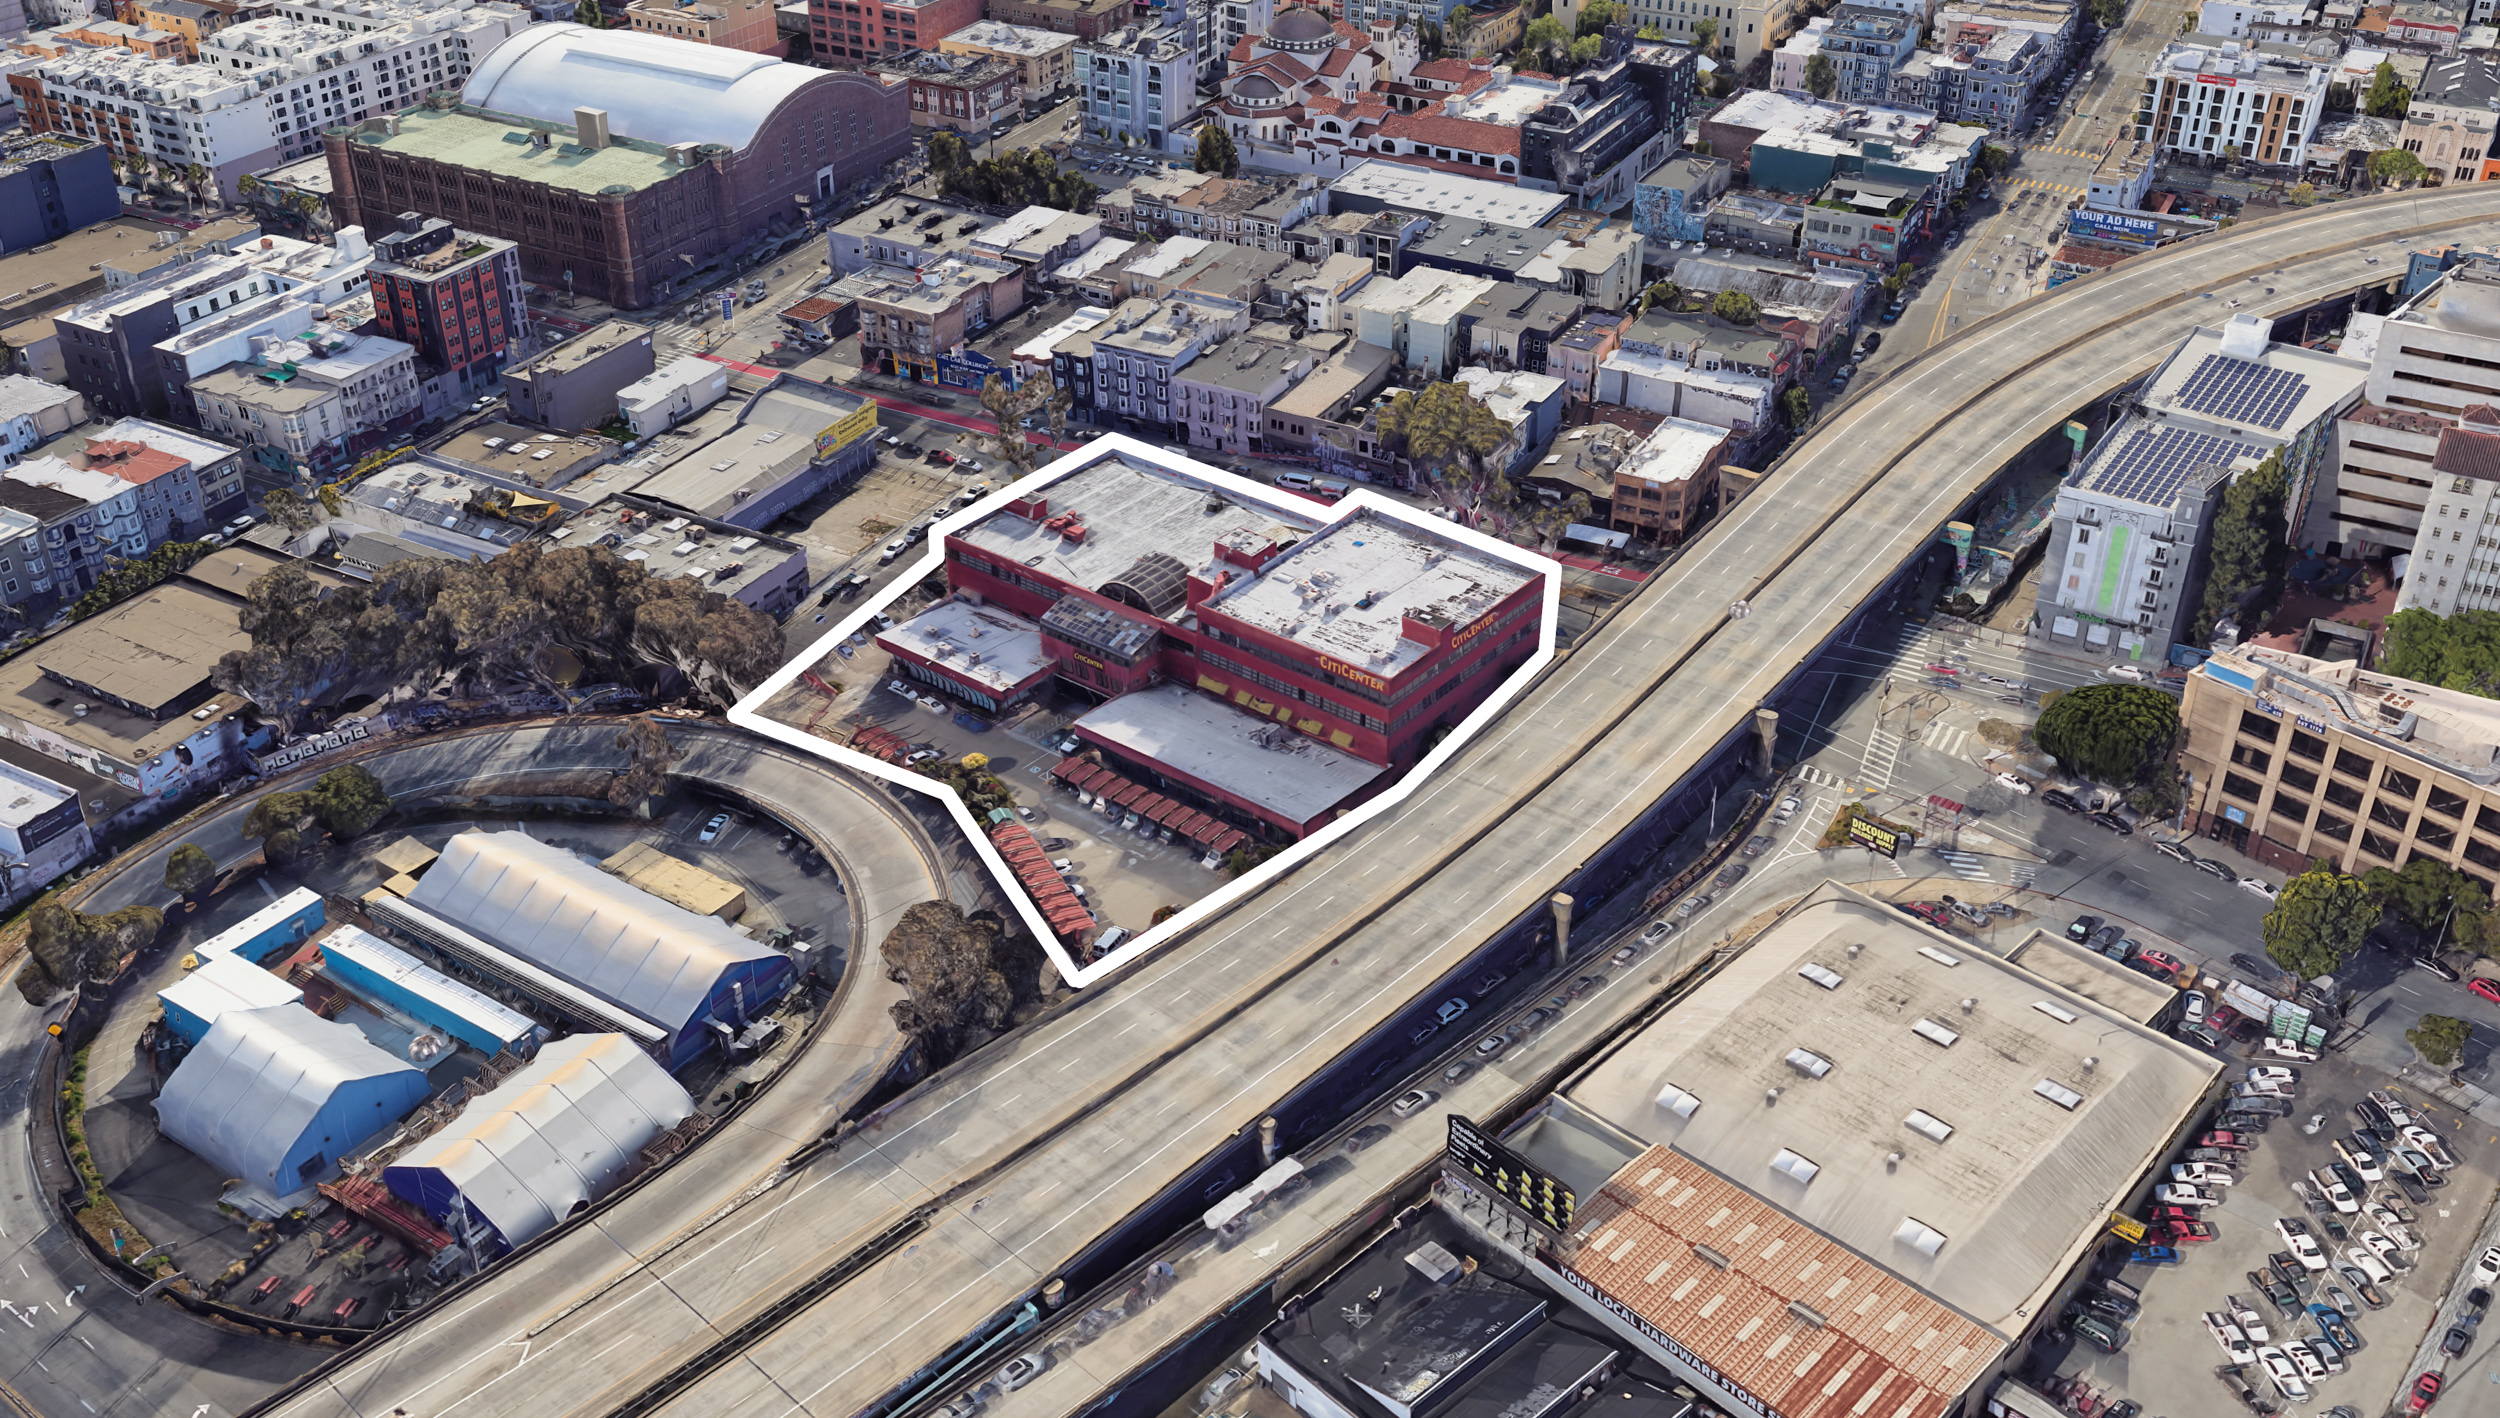 1717 Mission Street, image via Google Satellite